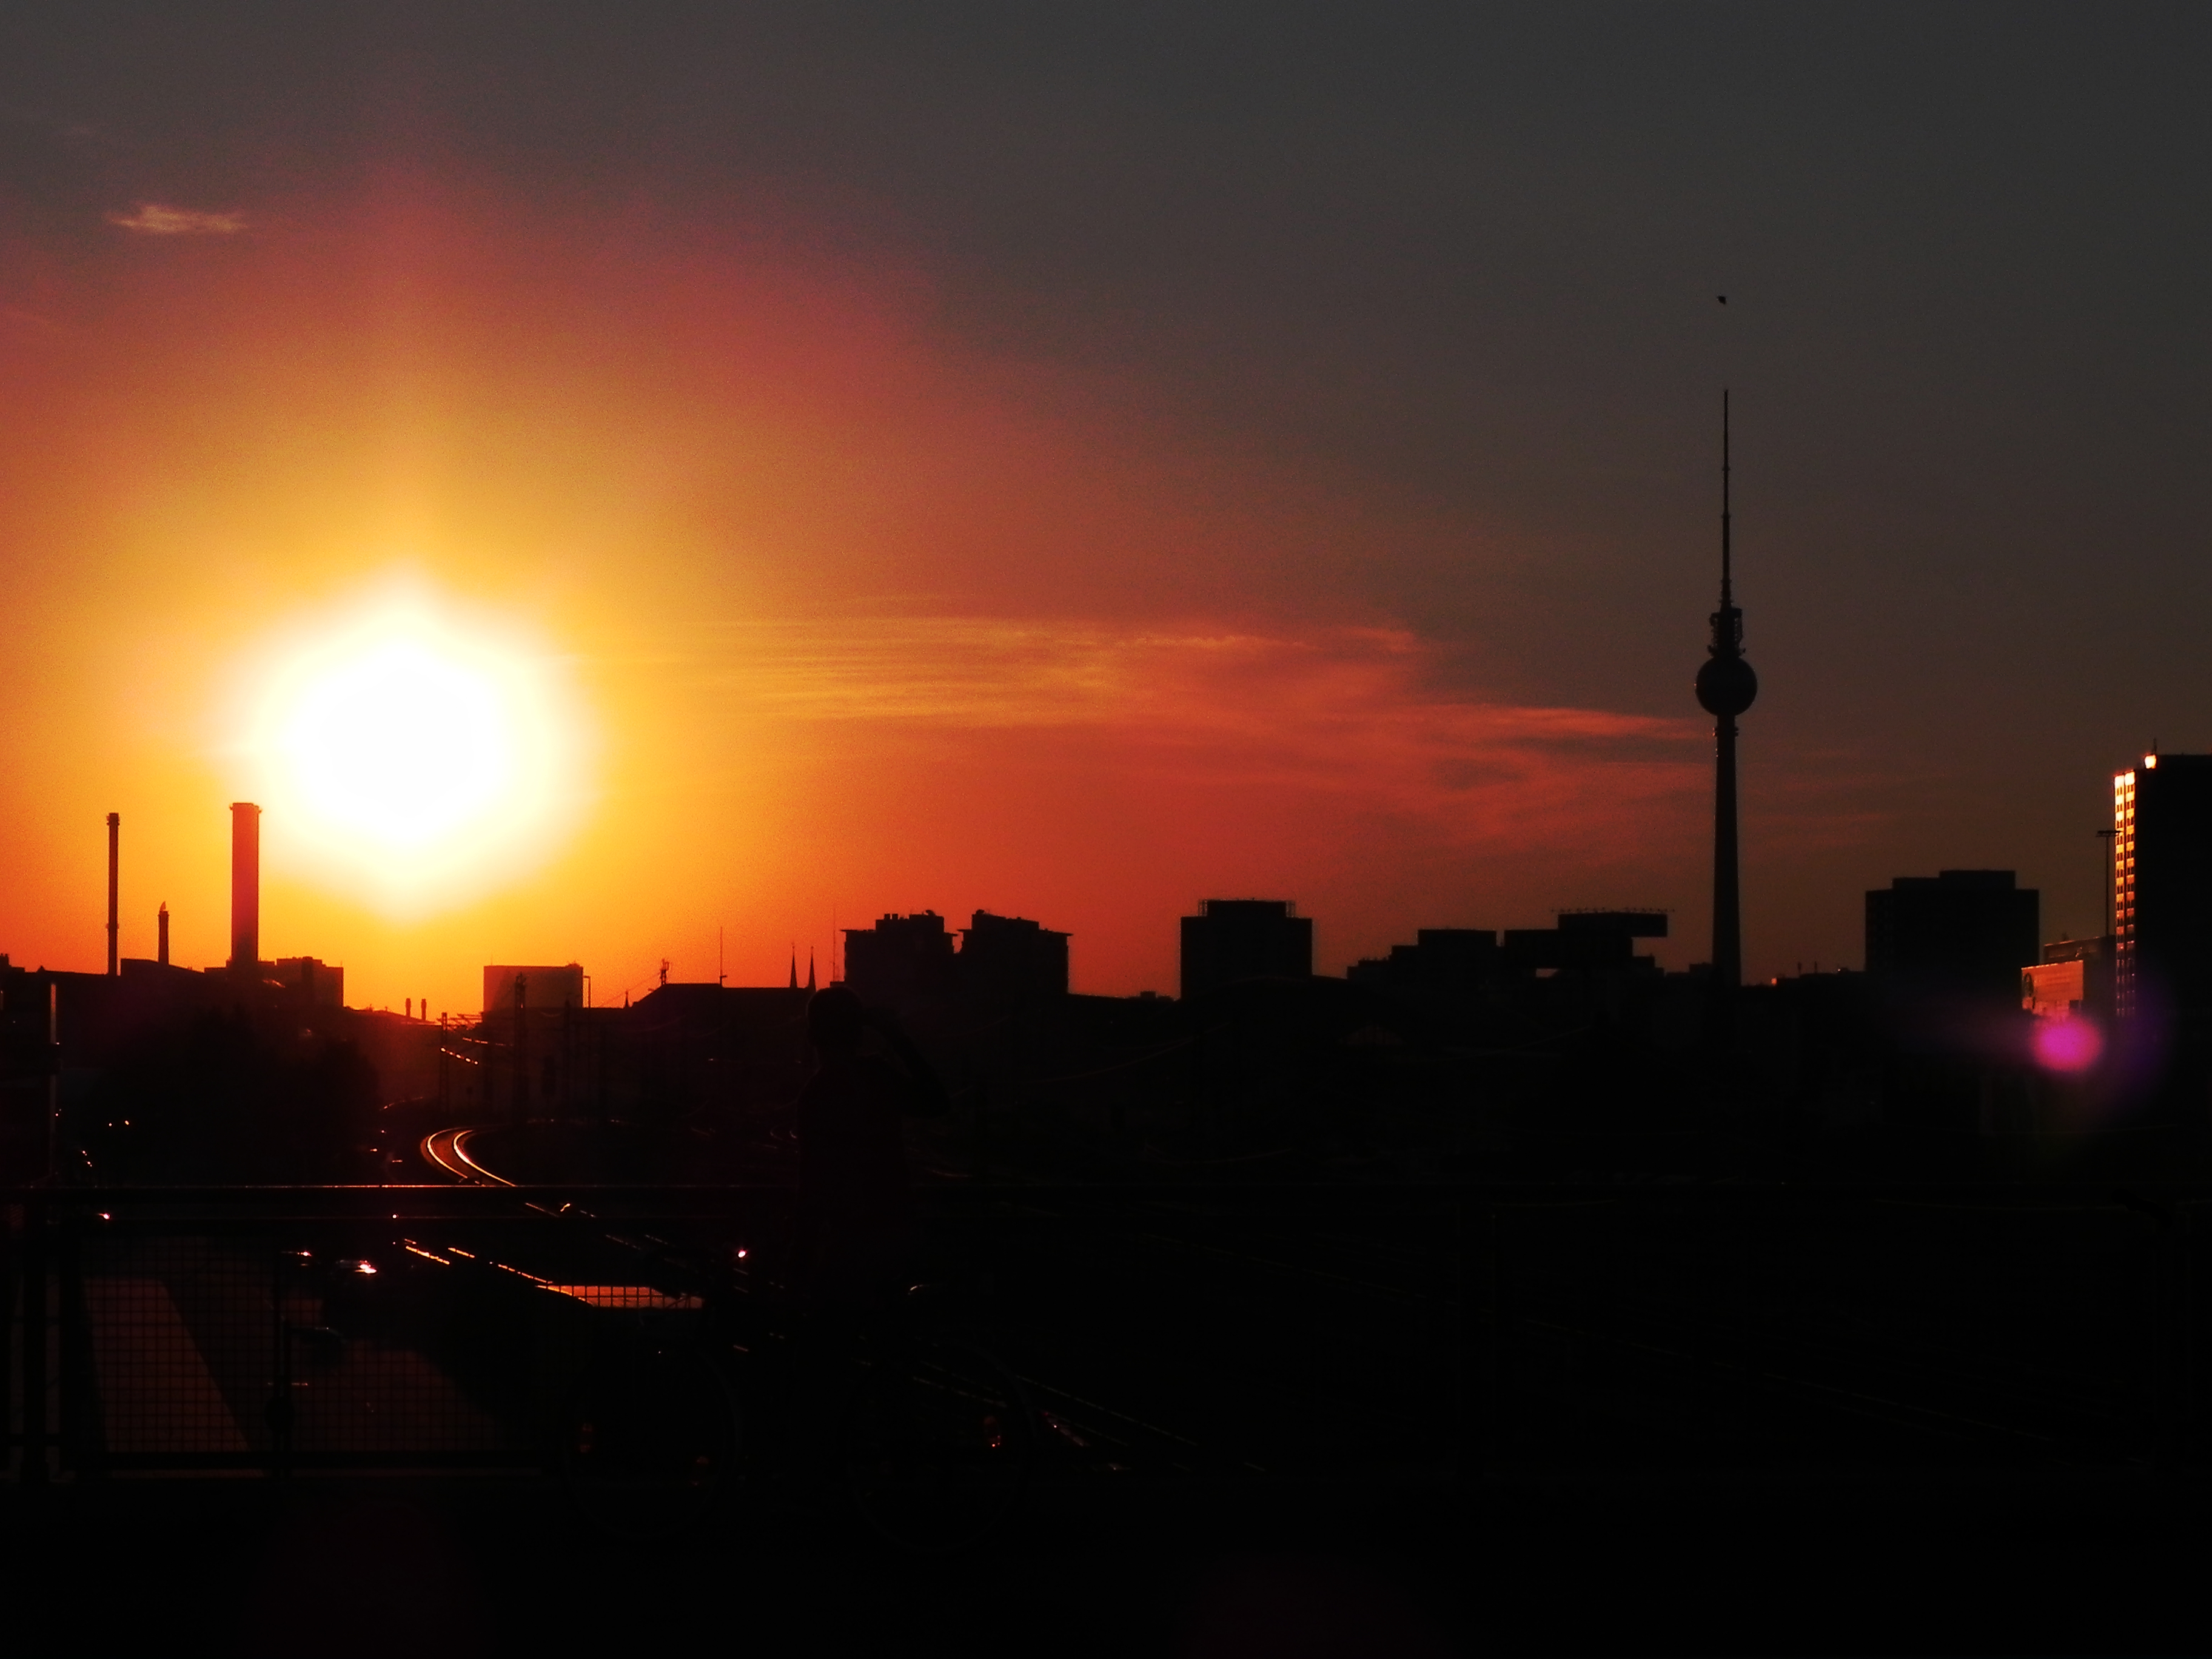 Sunset Berlin by FireMoose on DeviantArt